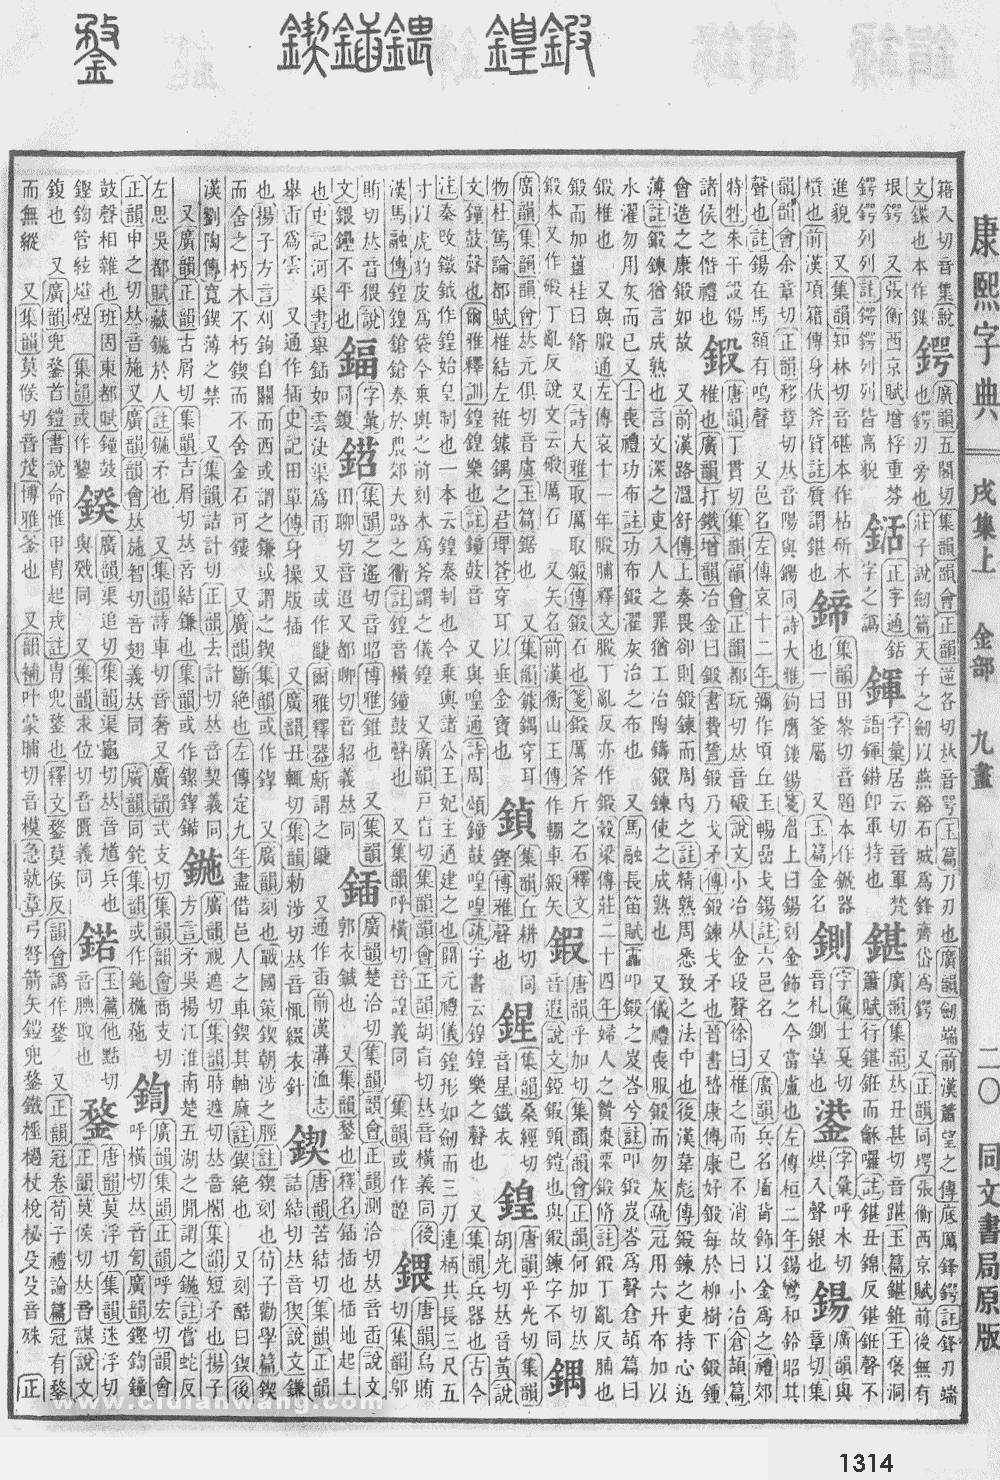 康熙字典掃描版第1314頁